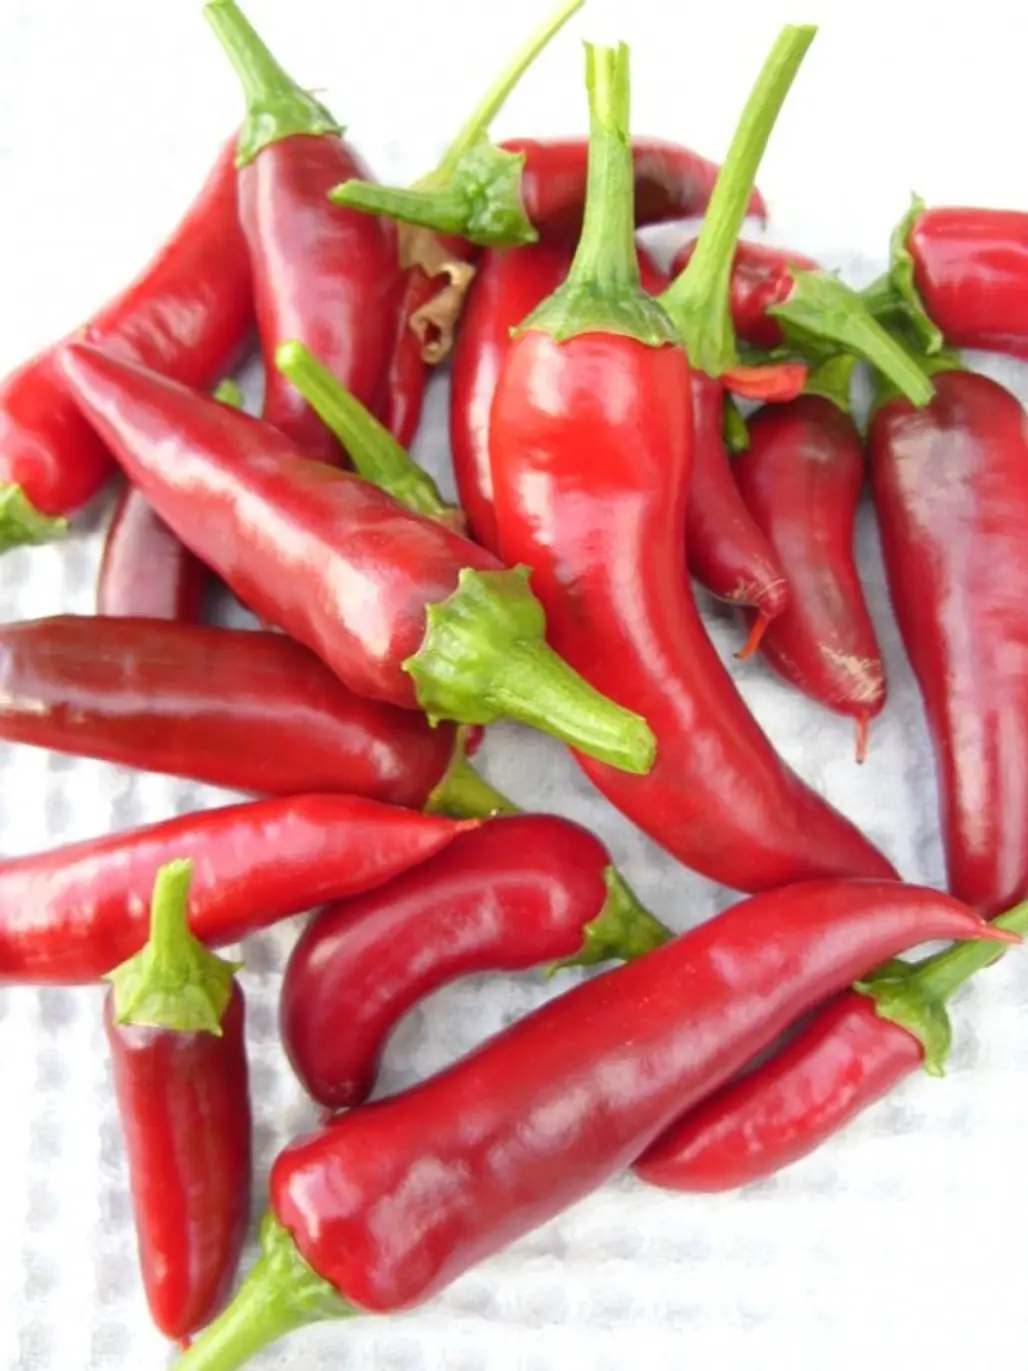 malagueta pepper,food,peperoncini,chili pepper,produce,